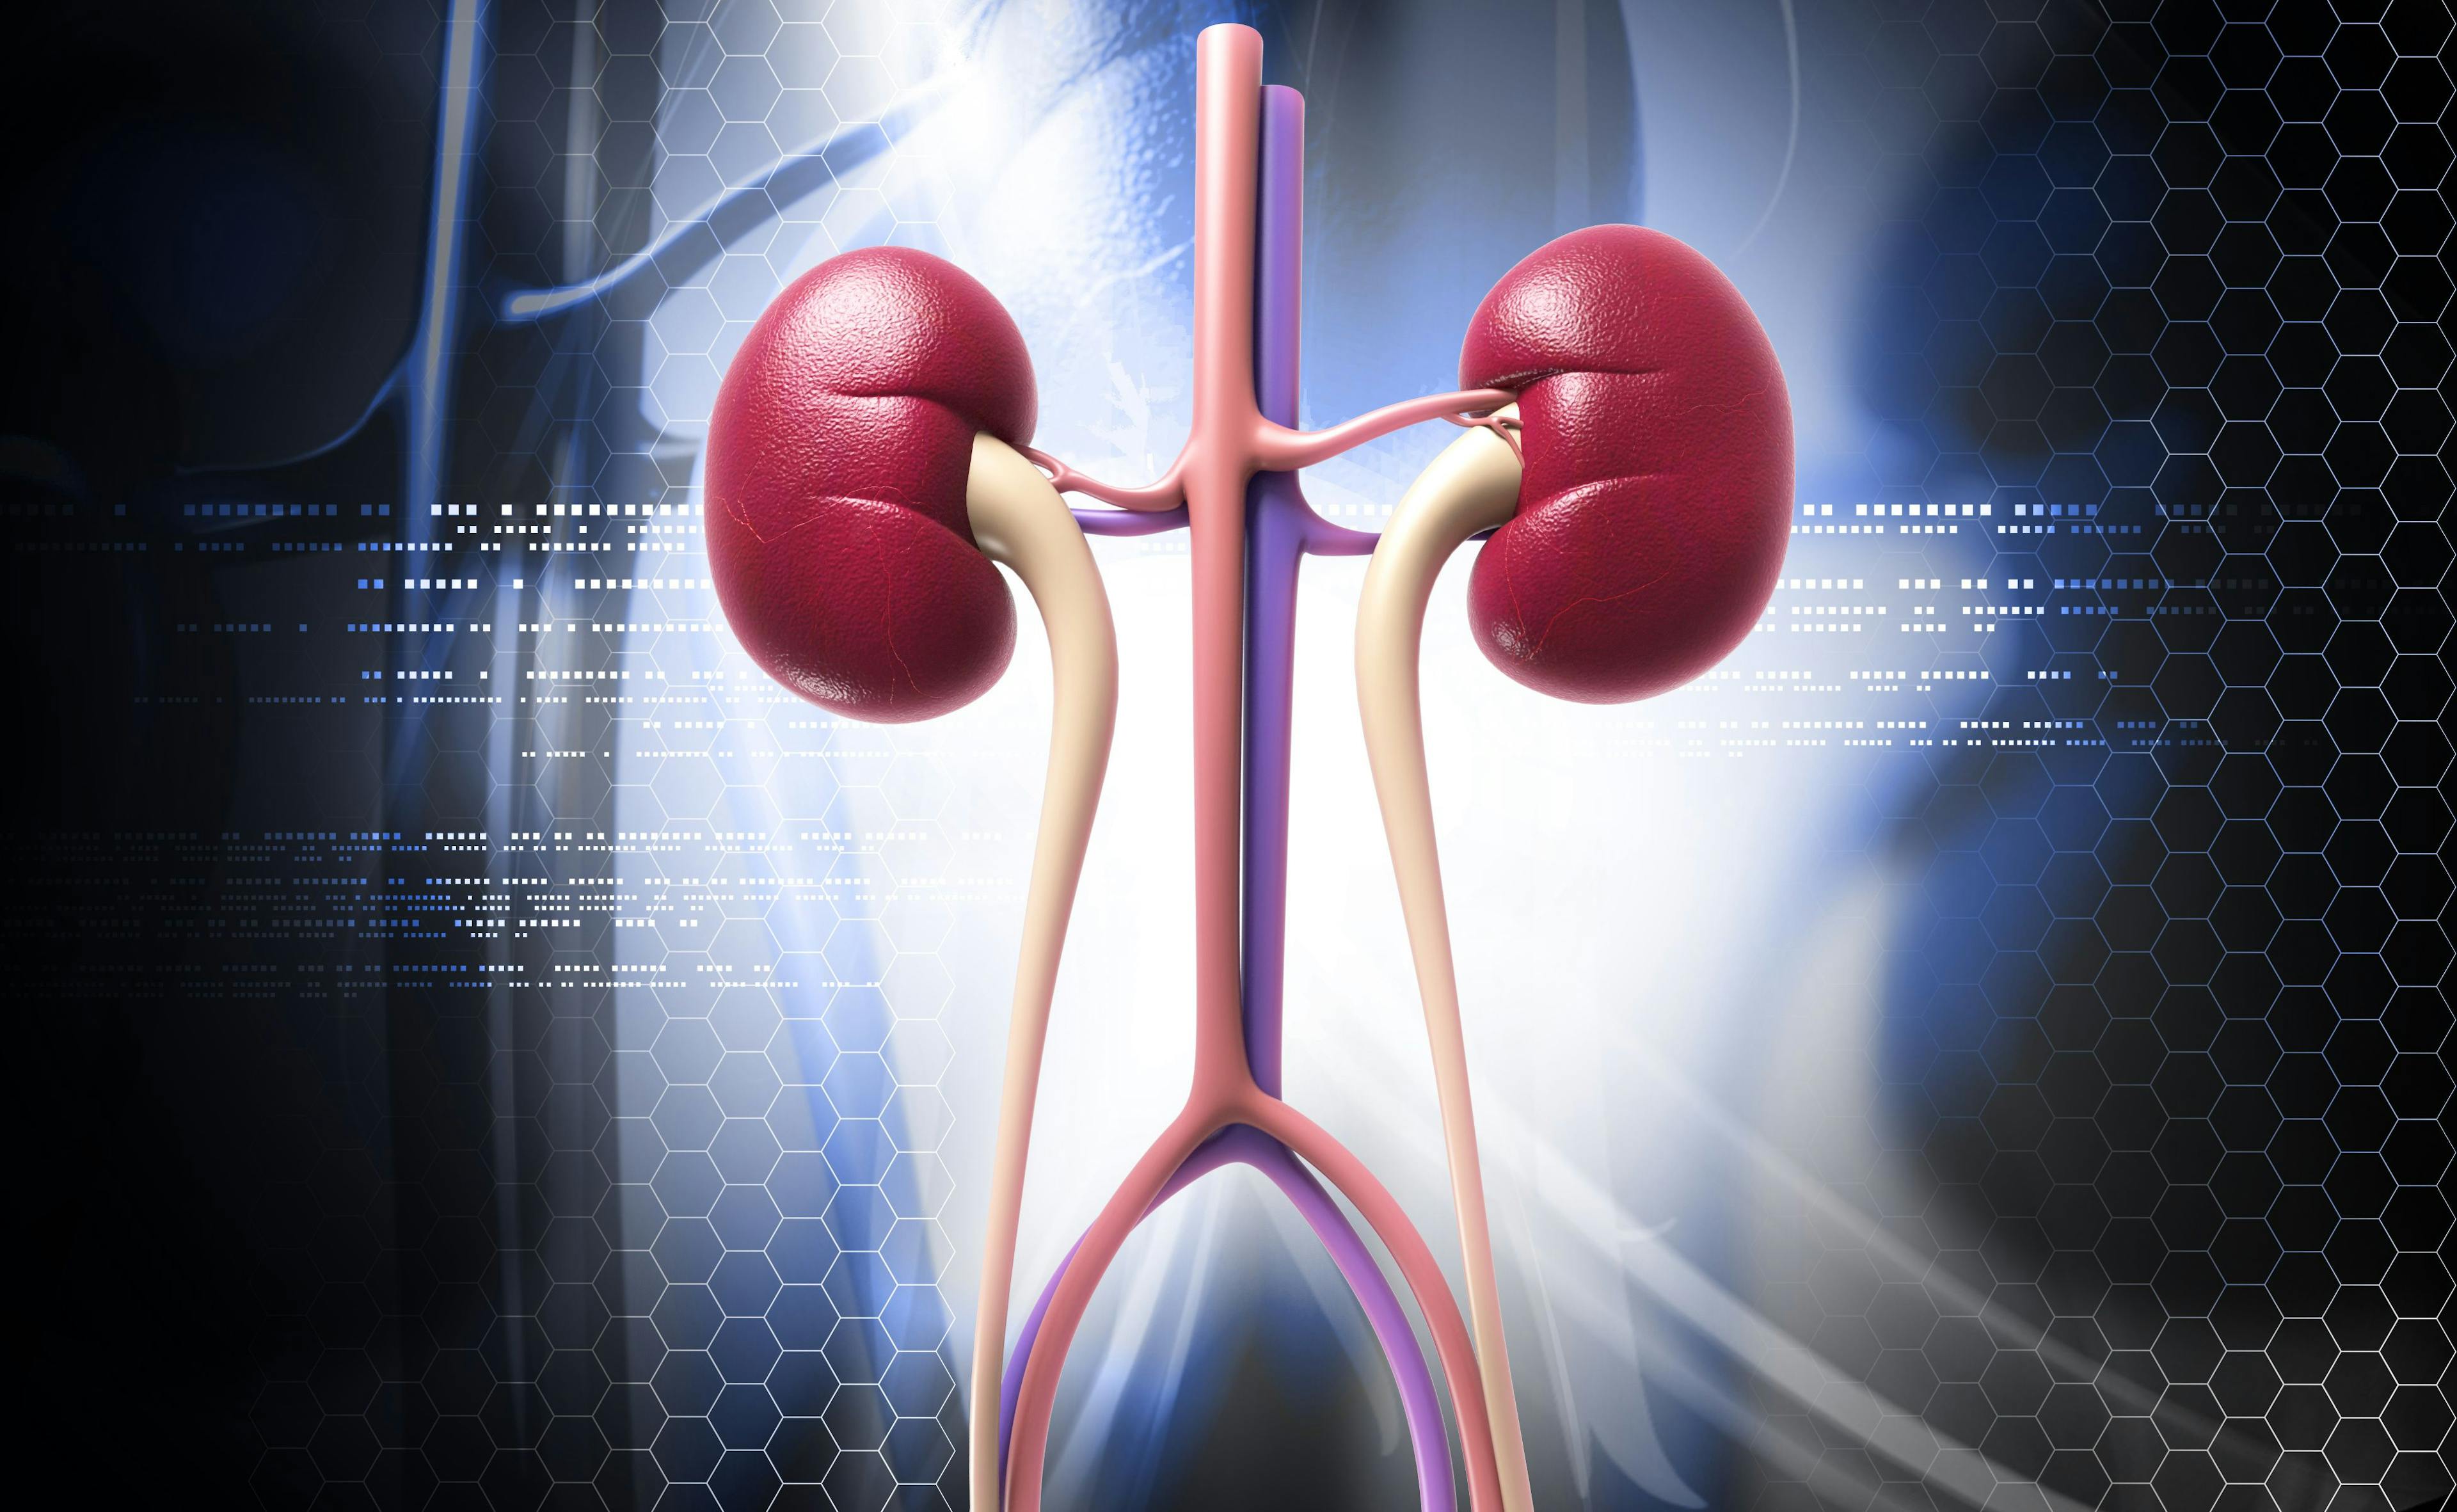 computerized image of kidneys